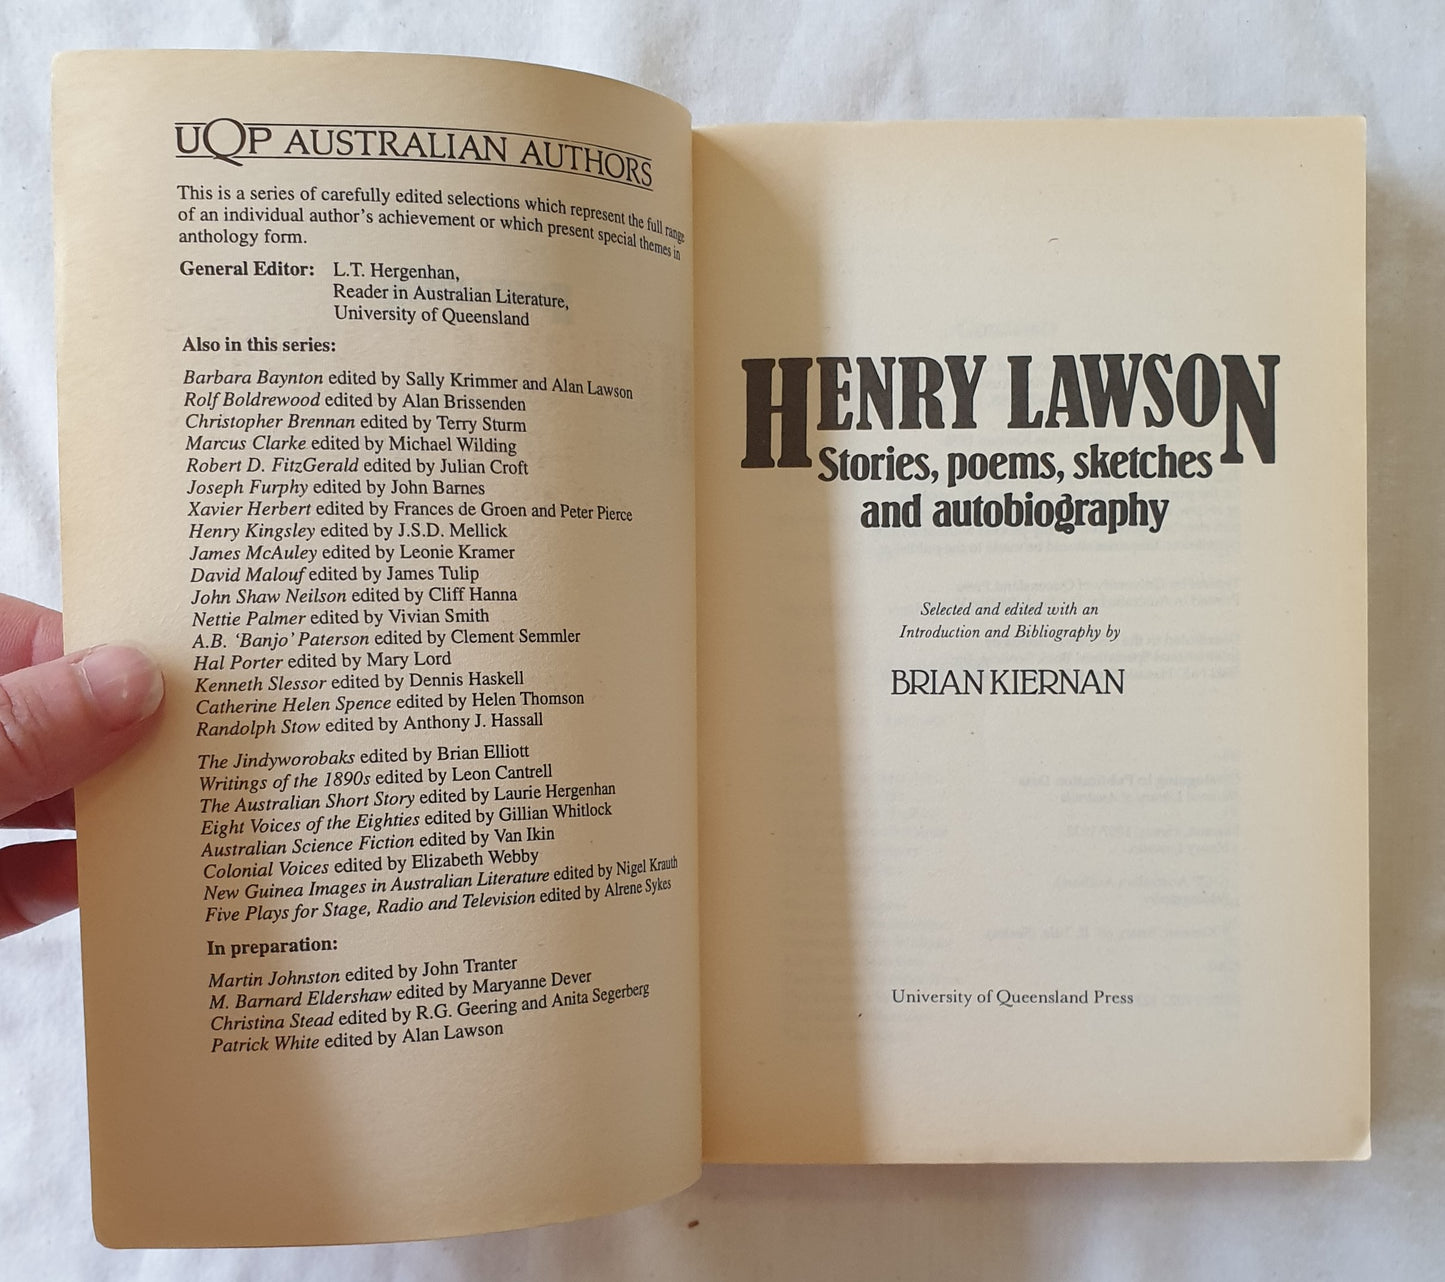 Henry Lawson Edited by Brian Kiernan